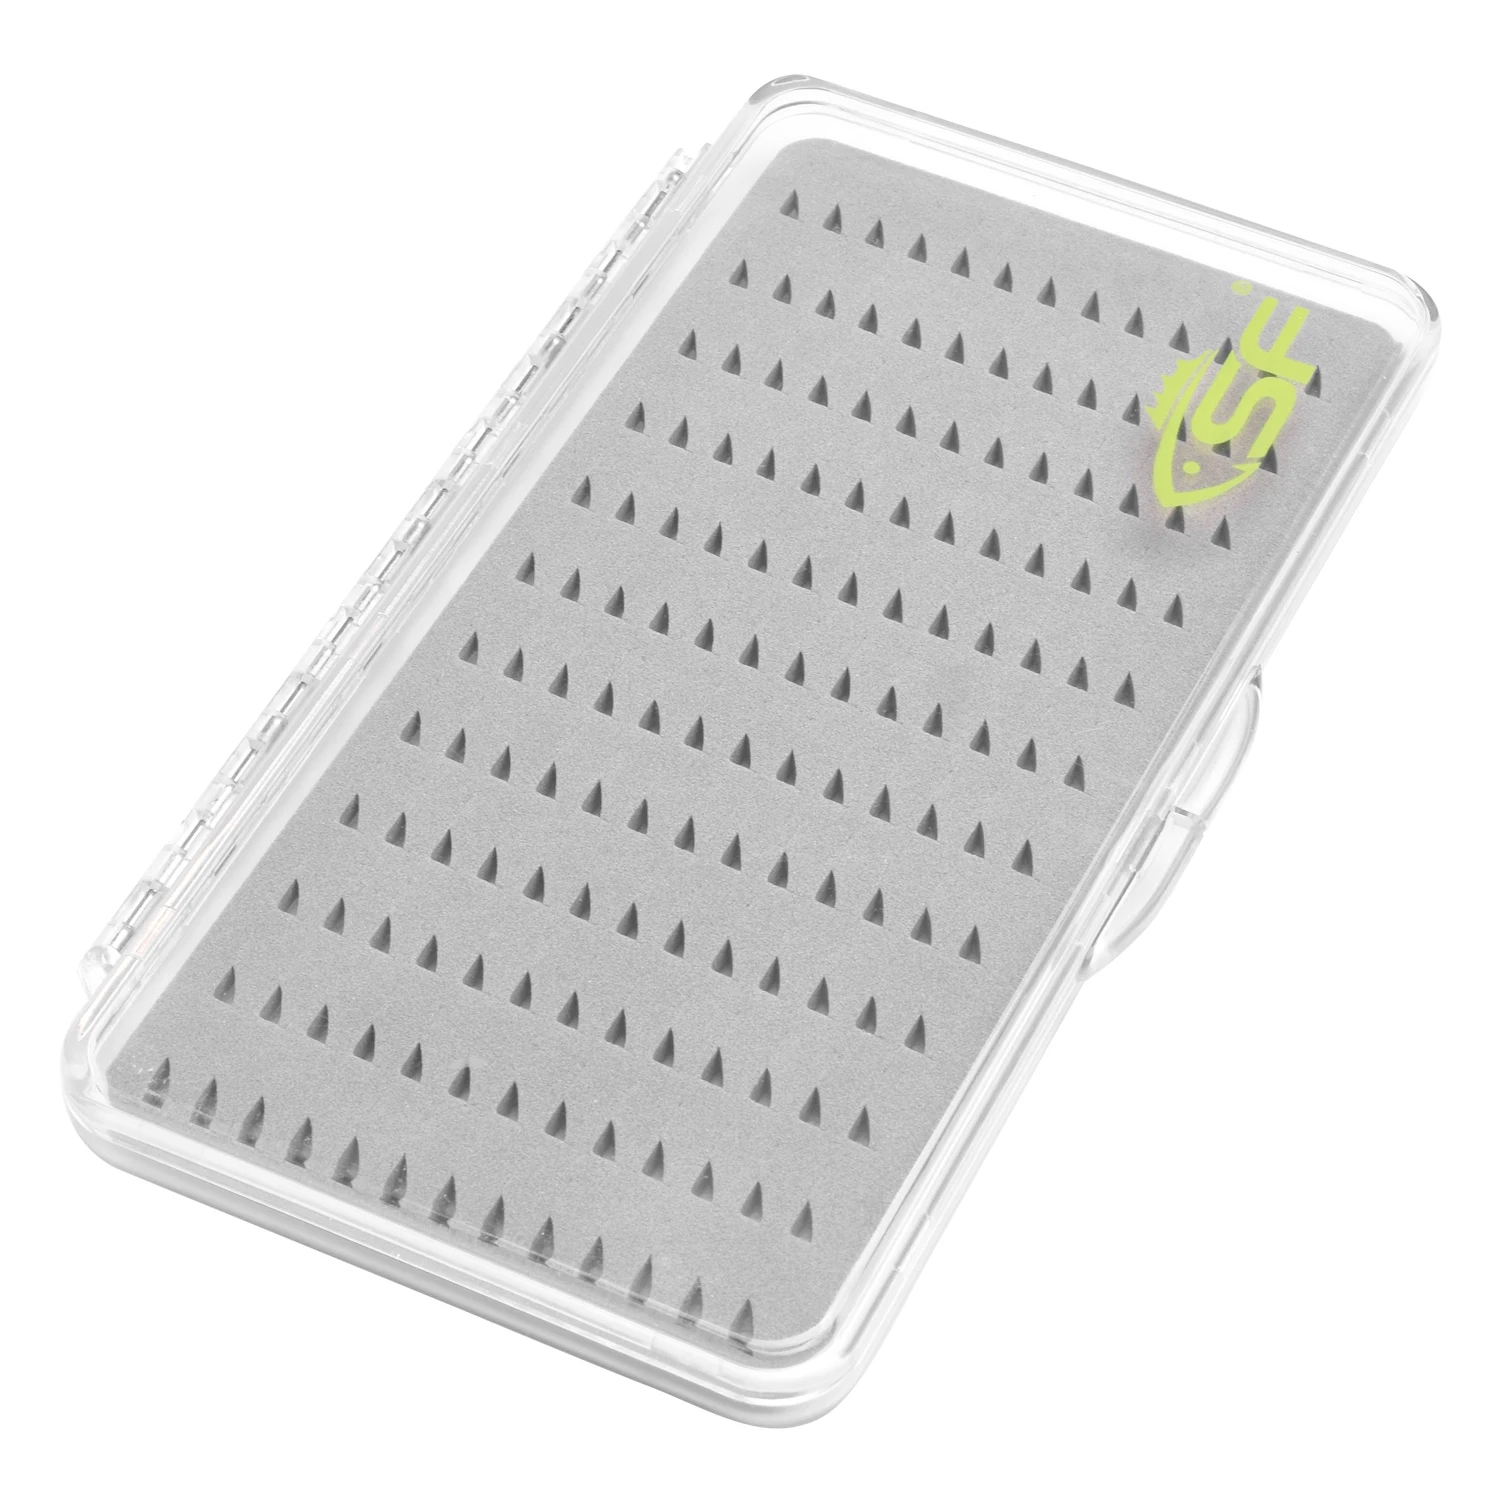 La boîte de pêche à la mouche Super mince SF contient 168 mouches 188*108*15mm (sans mouches)